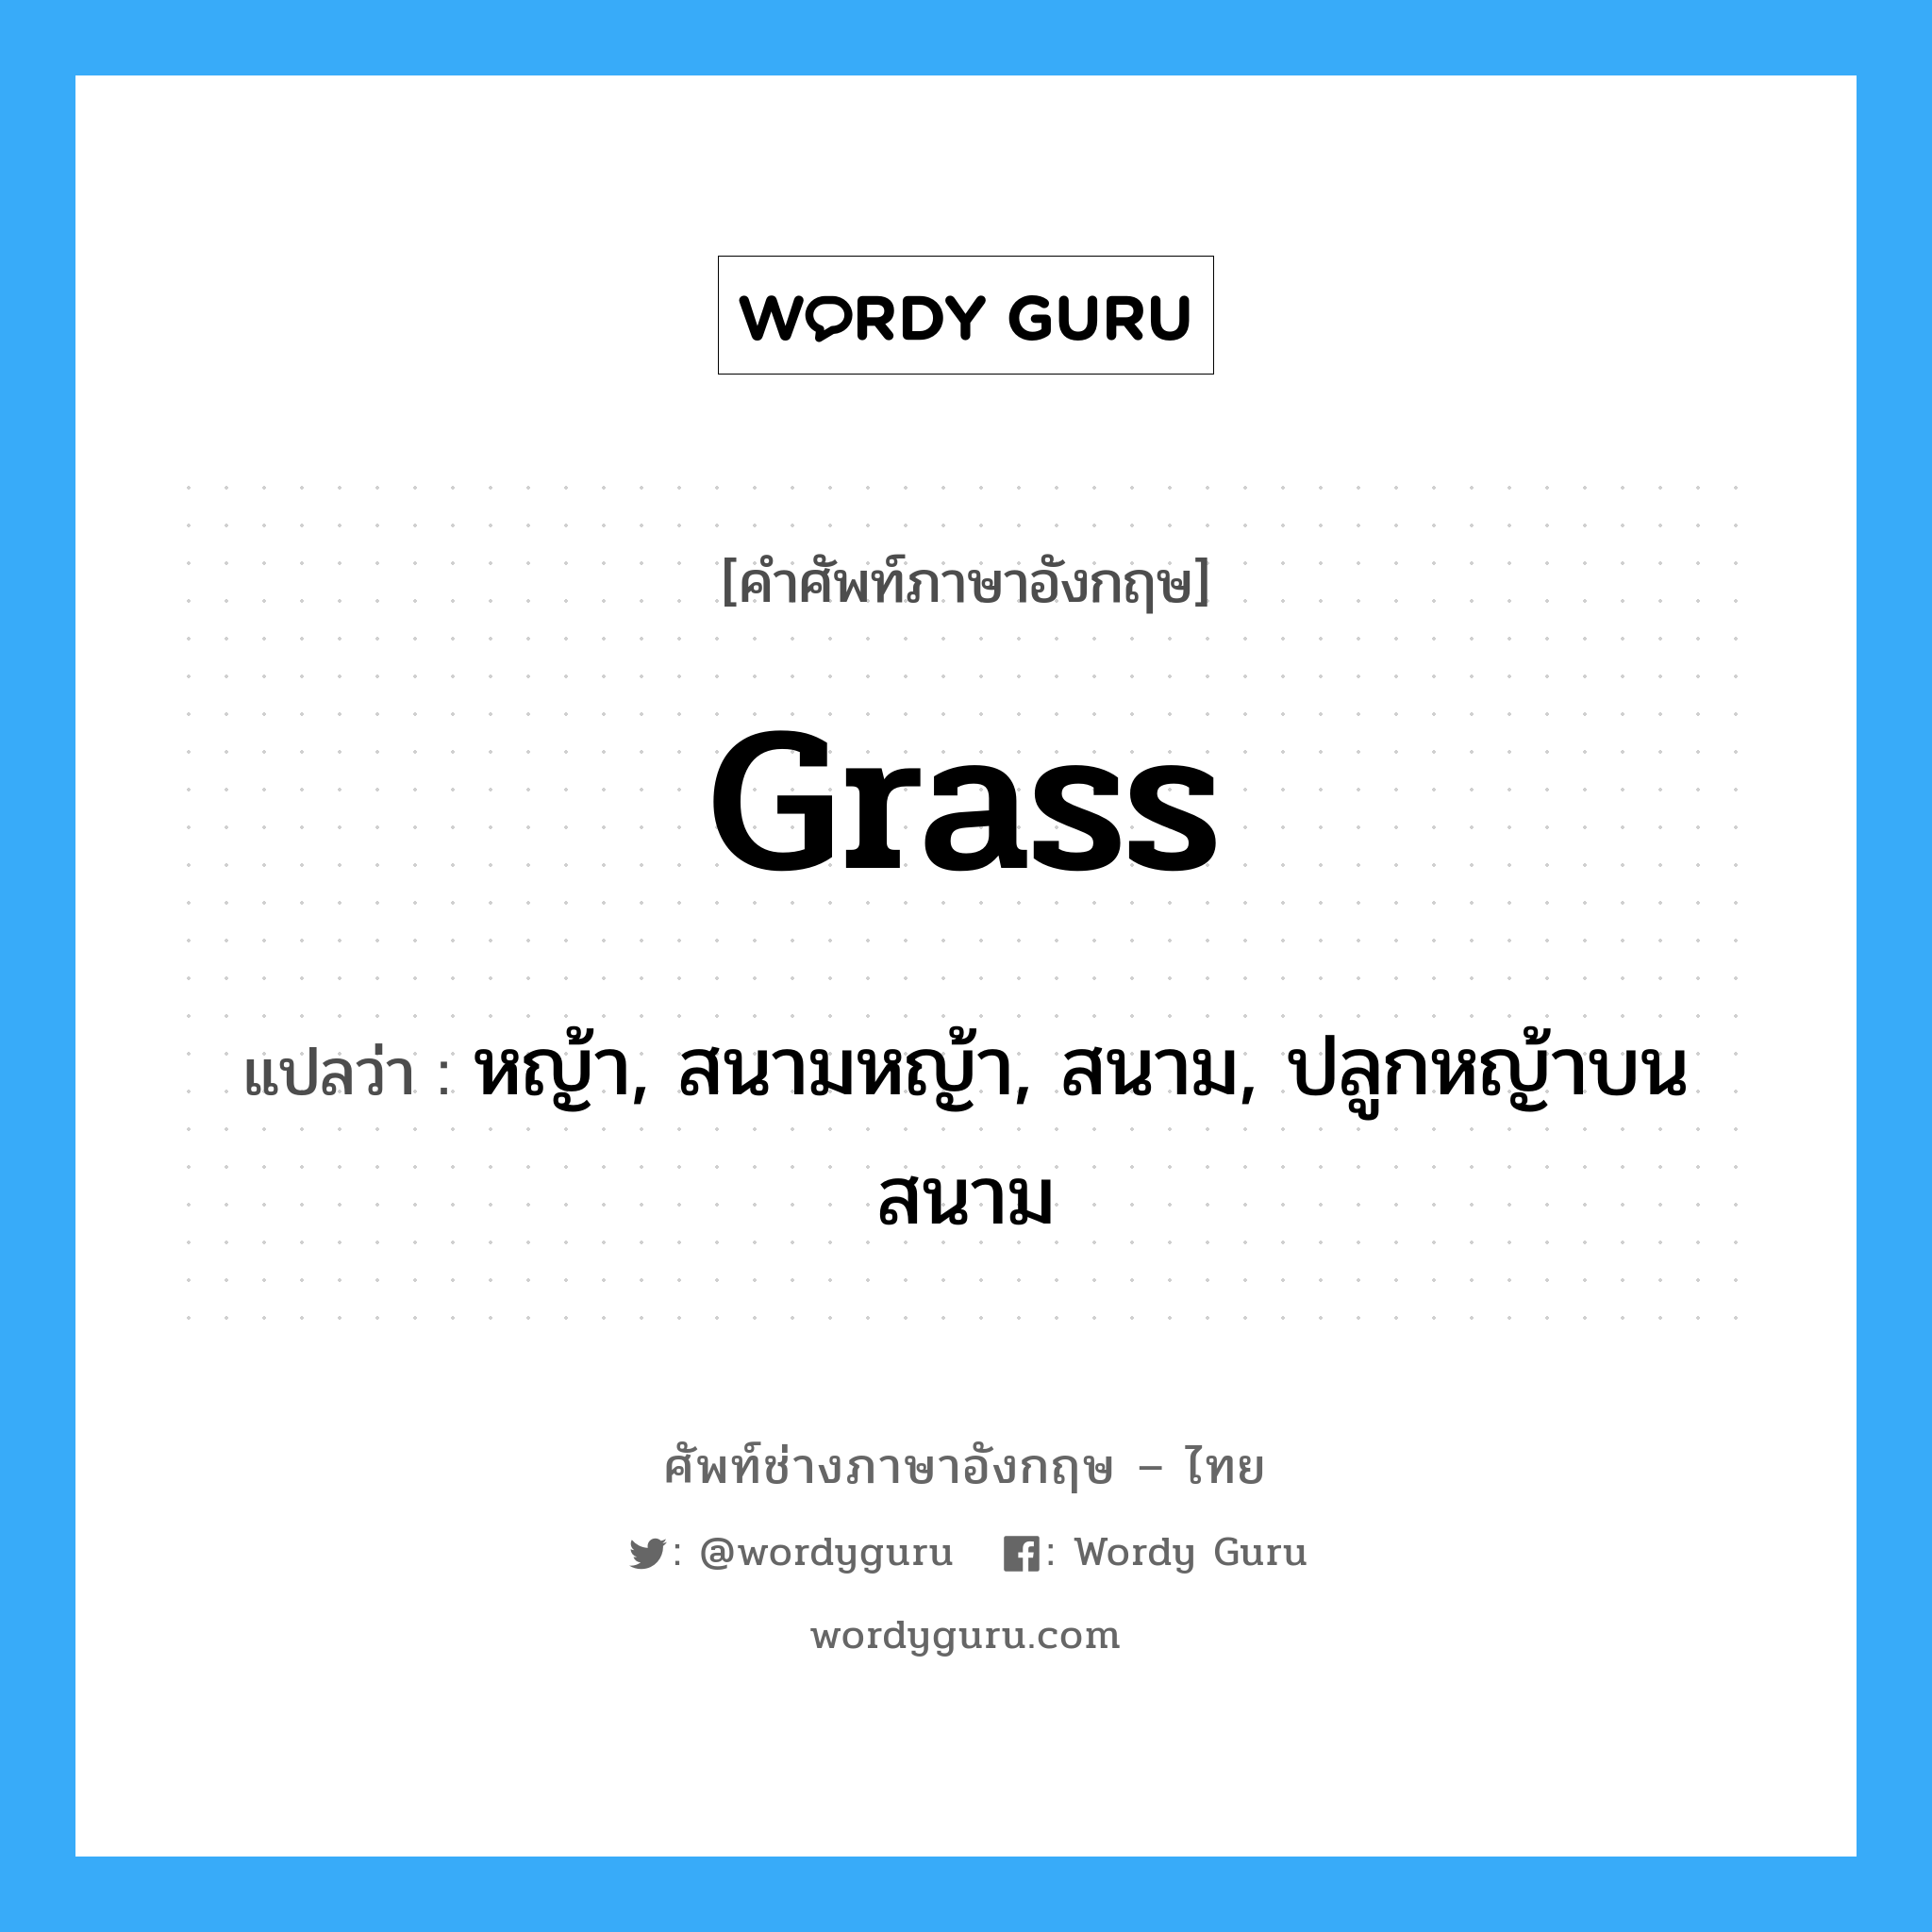 grass แปลว่า?, คำศัพท์ช่างภาษาอังกฤษ - ไทย grass คำศัพท์ภาษาอังกฤษ grass แปลว่า หญ้า, สนามหญ้า, สนาม, ปลูกหญ้าบนสนาม